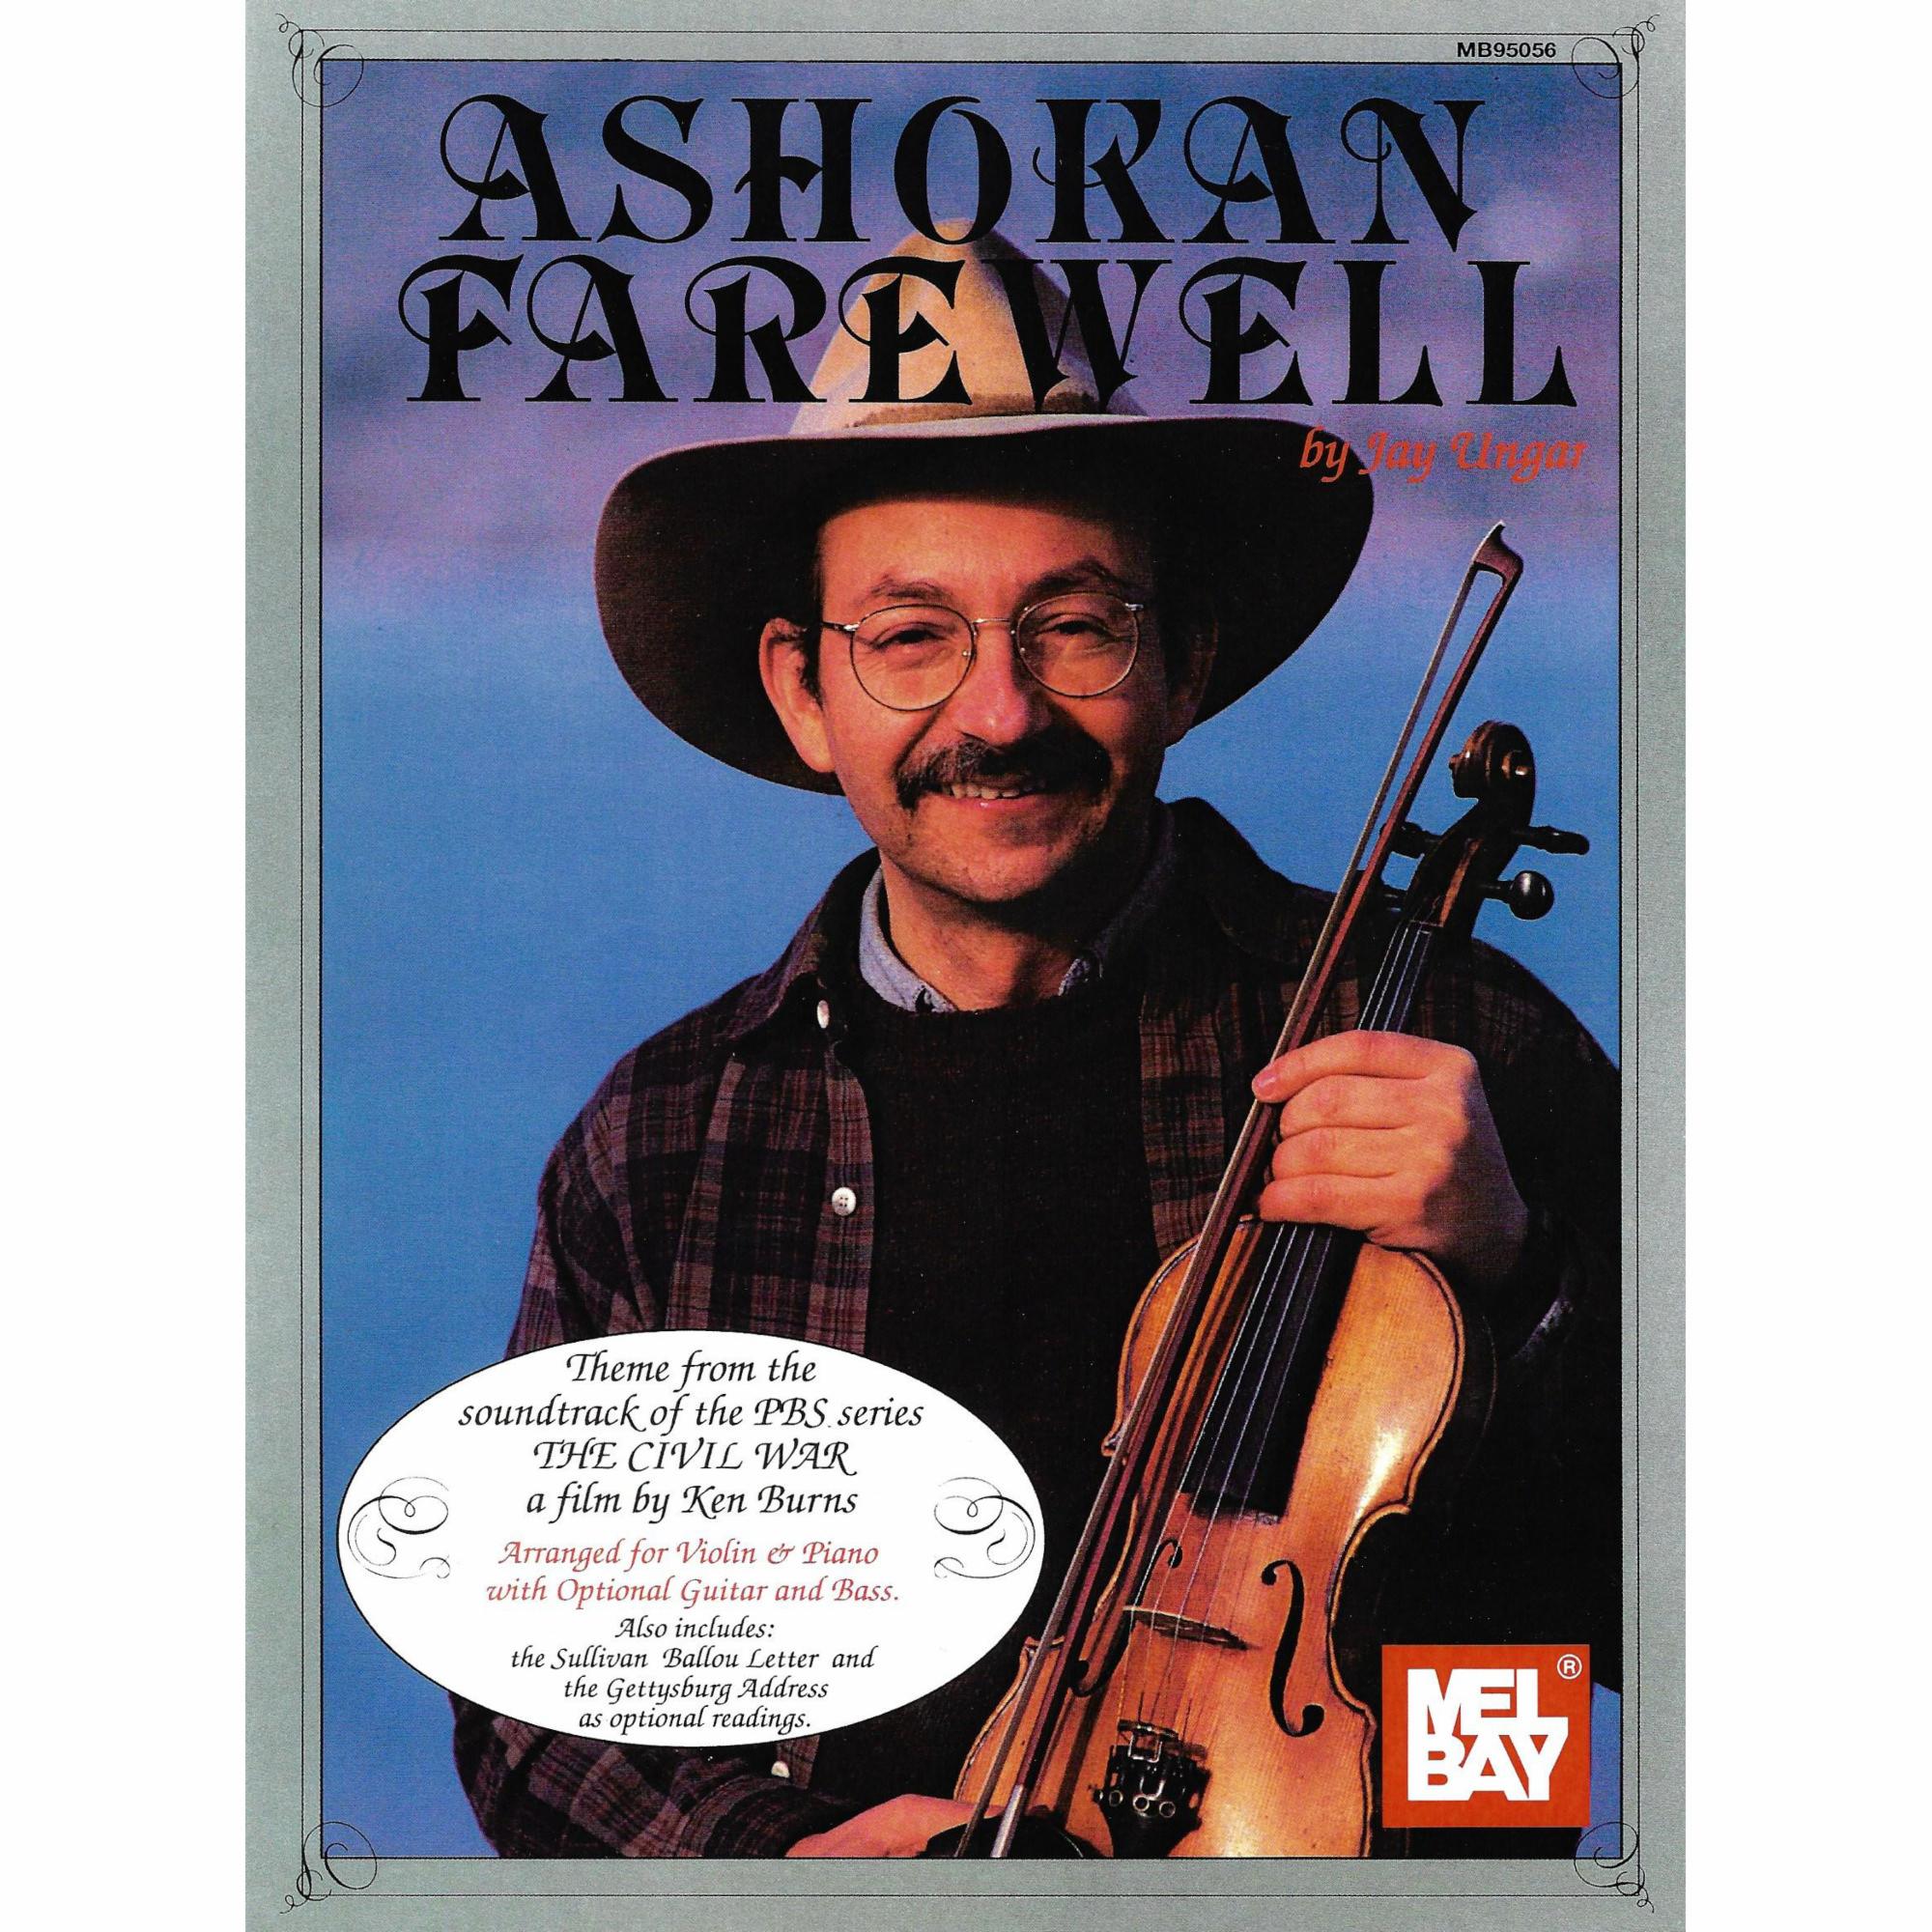 Ashokan Farewell for Violin and Piano